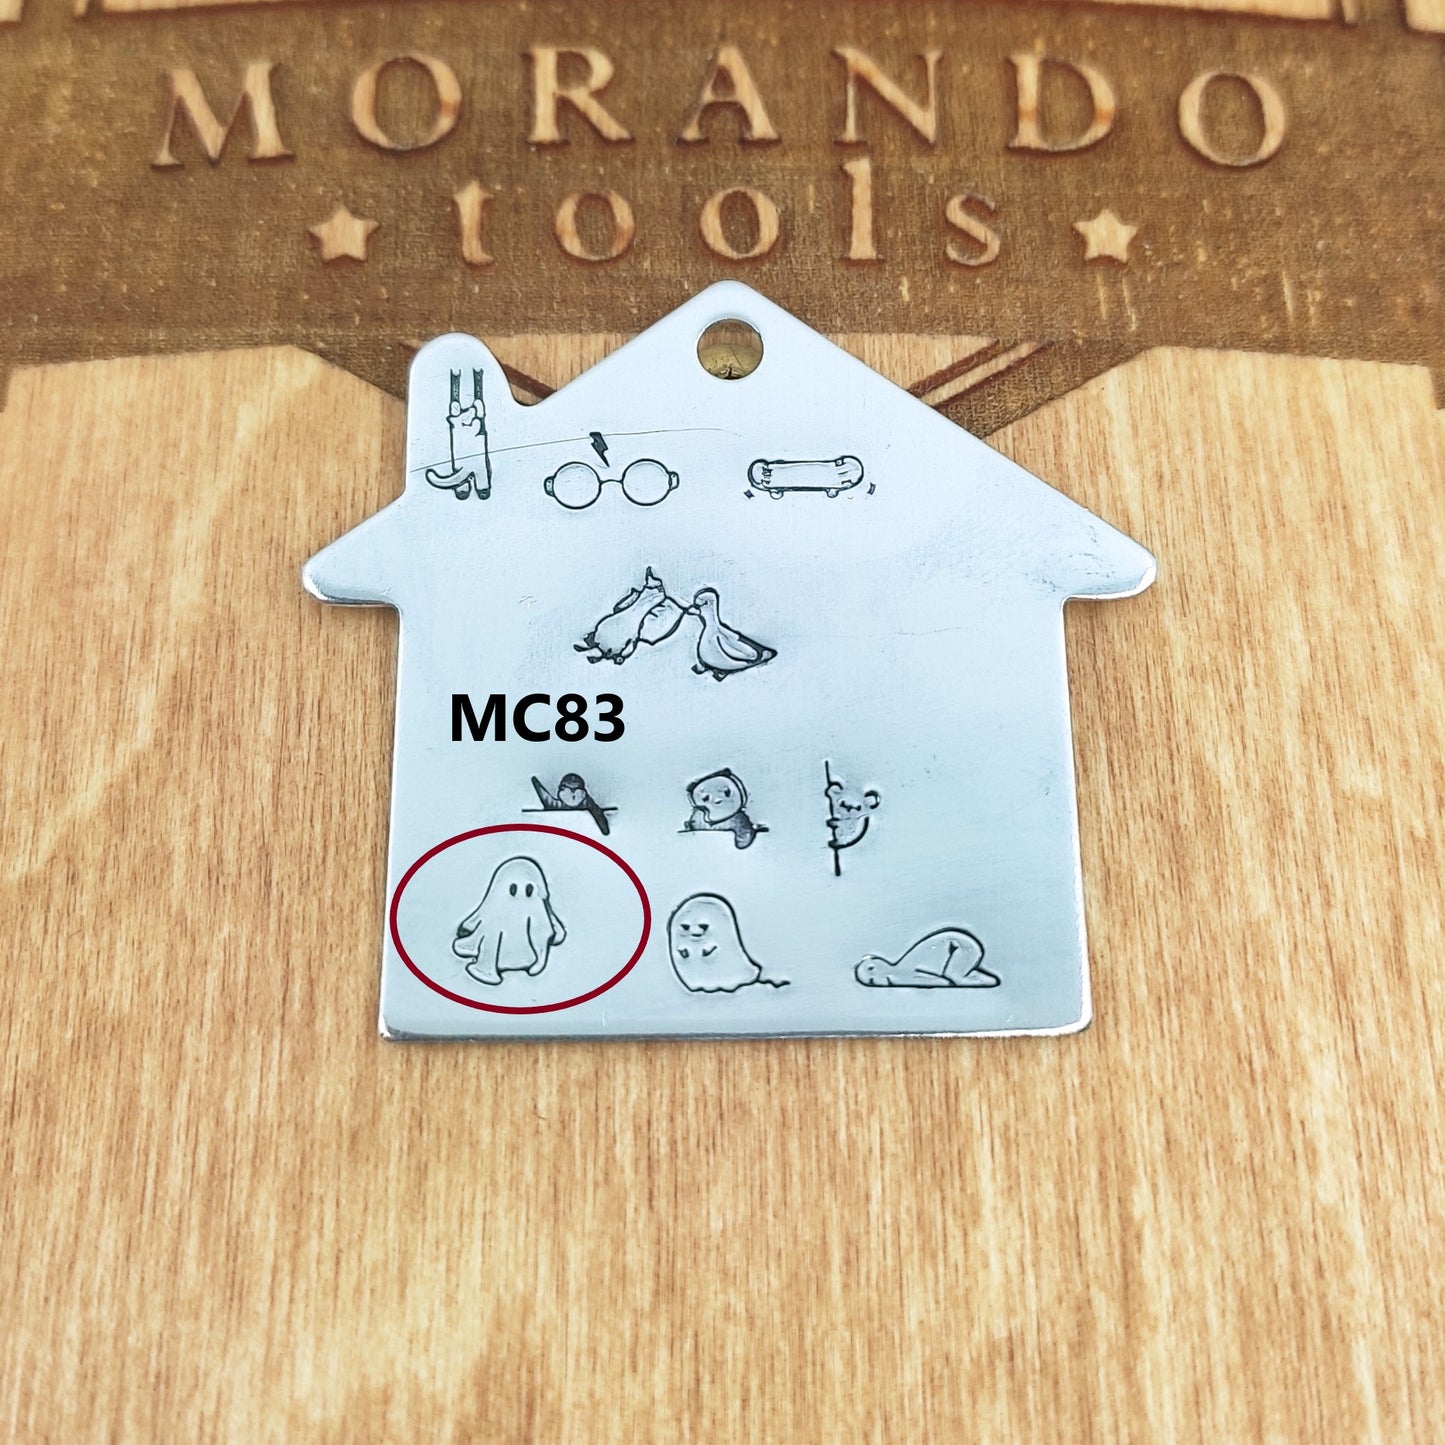 Micro Design Stamp MC83  5x5mm Cute Ghost- Ultra Details